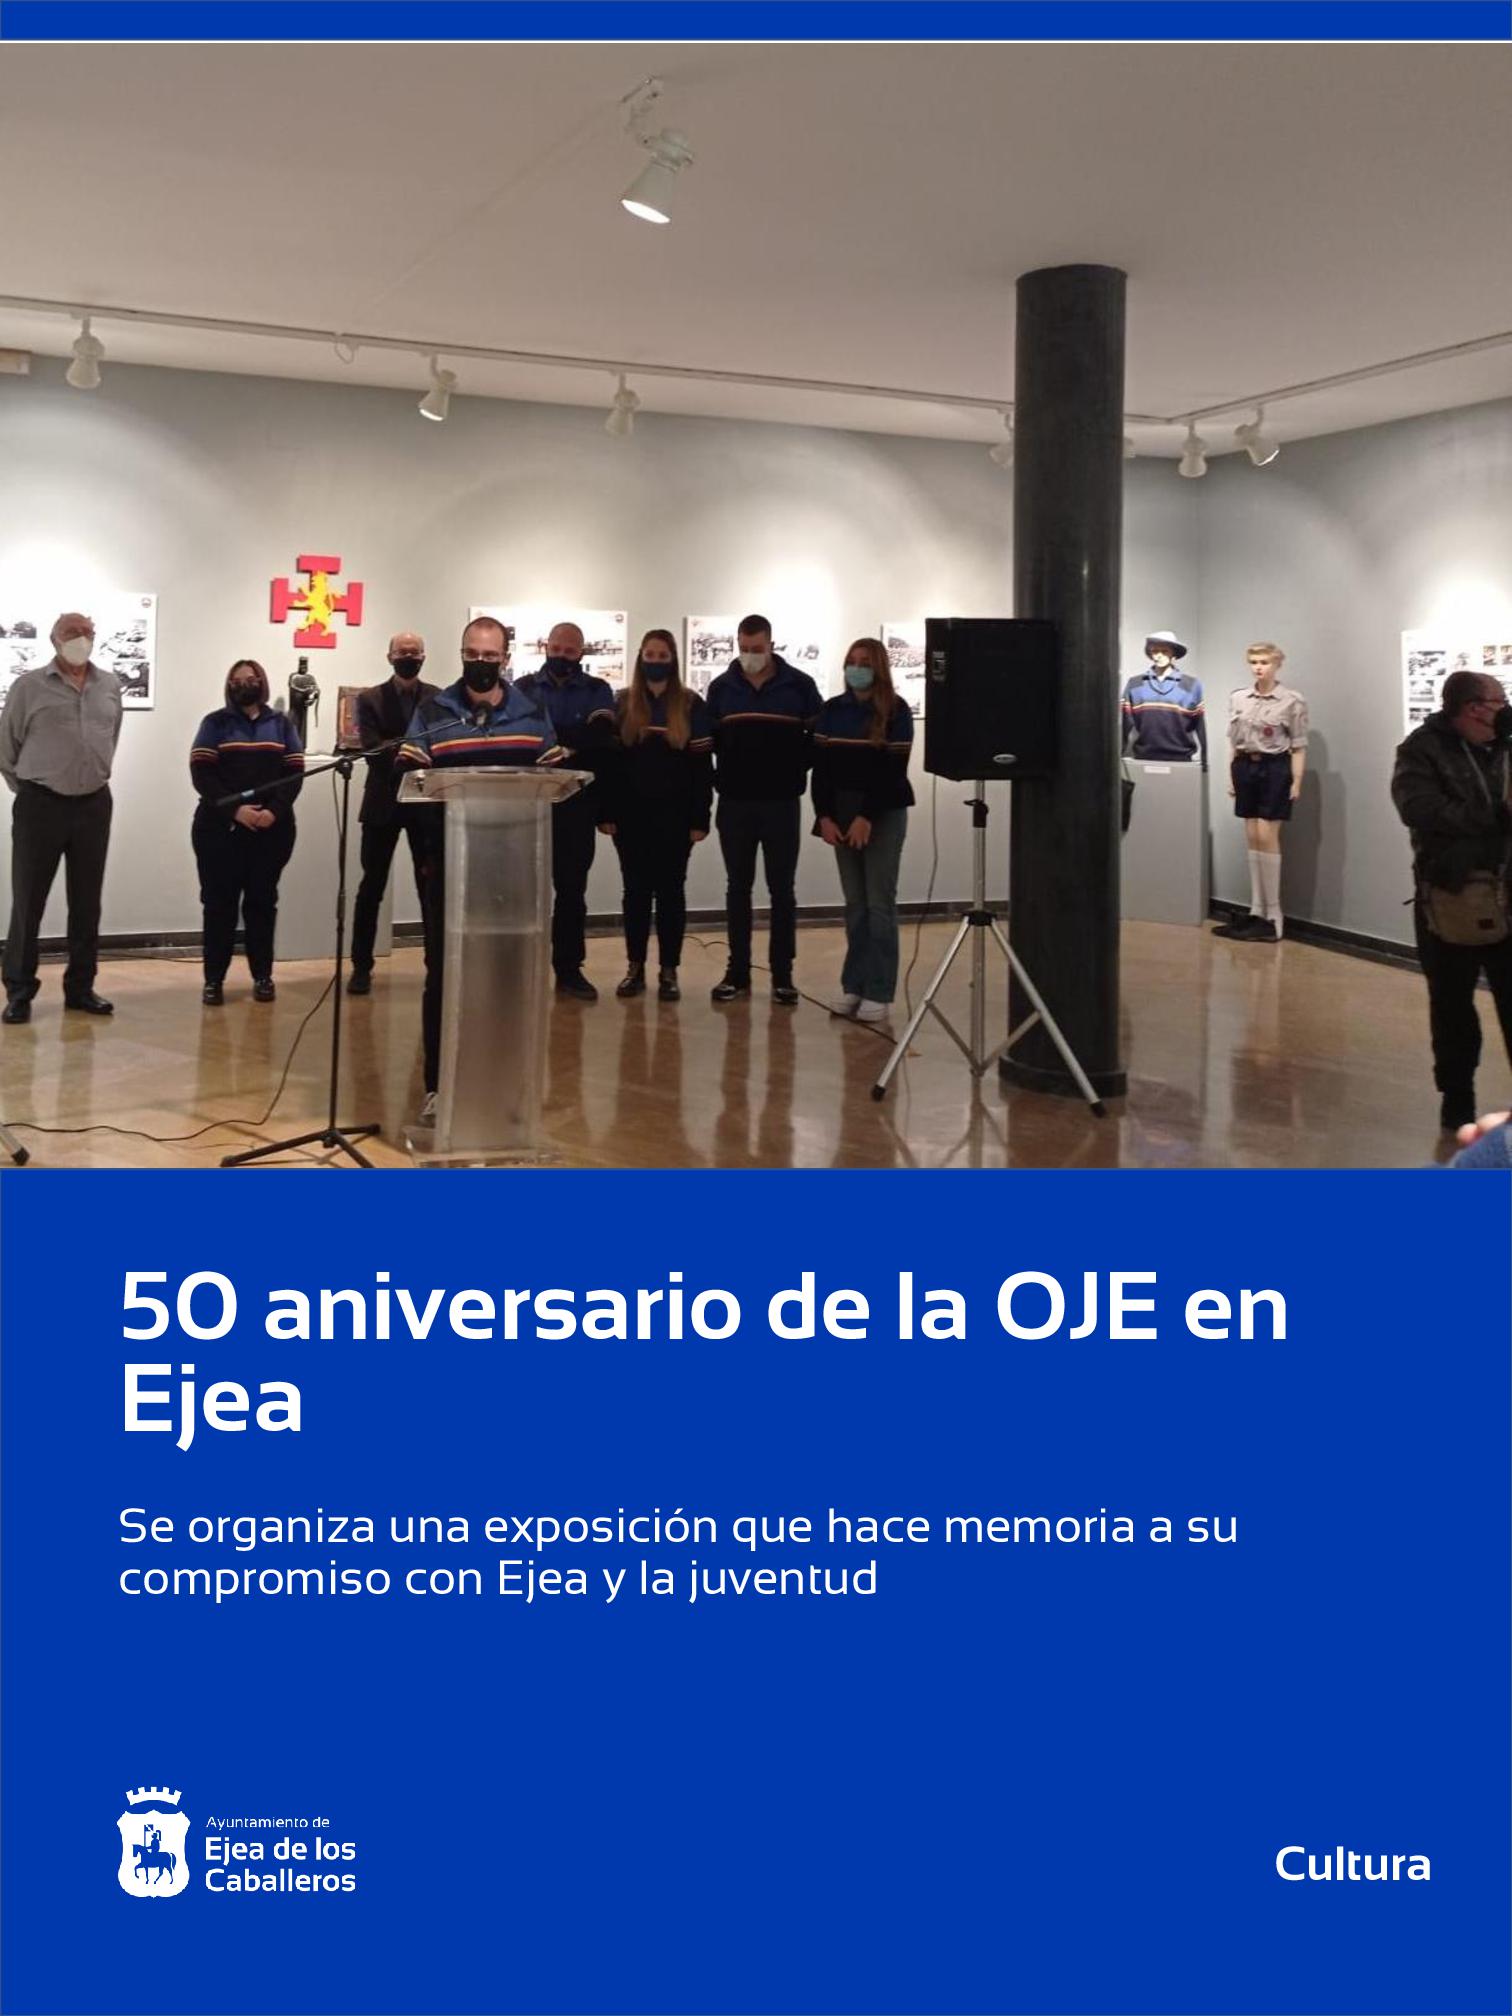 En este momento estás viendo La Organización Juvenil Española (OJE) celebra su 50 aniversario y organiza una exposición que hace memoria de su compromiso con Ejea y con la juventud